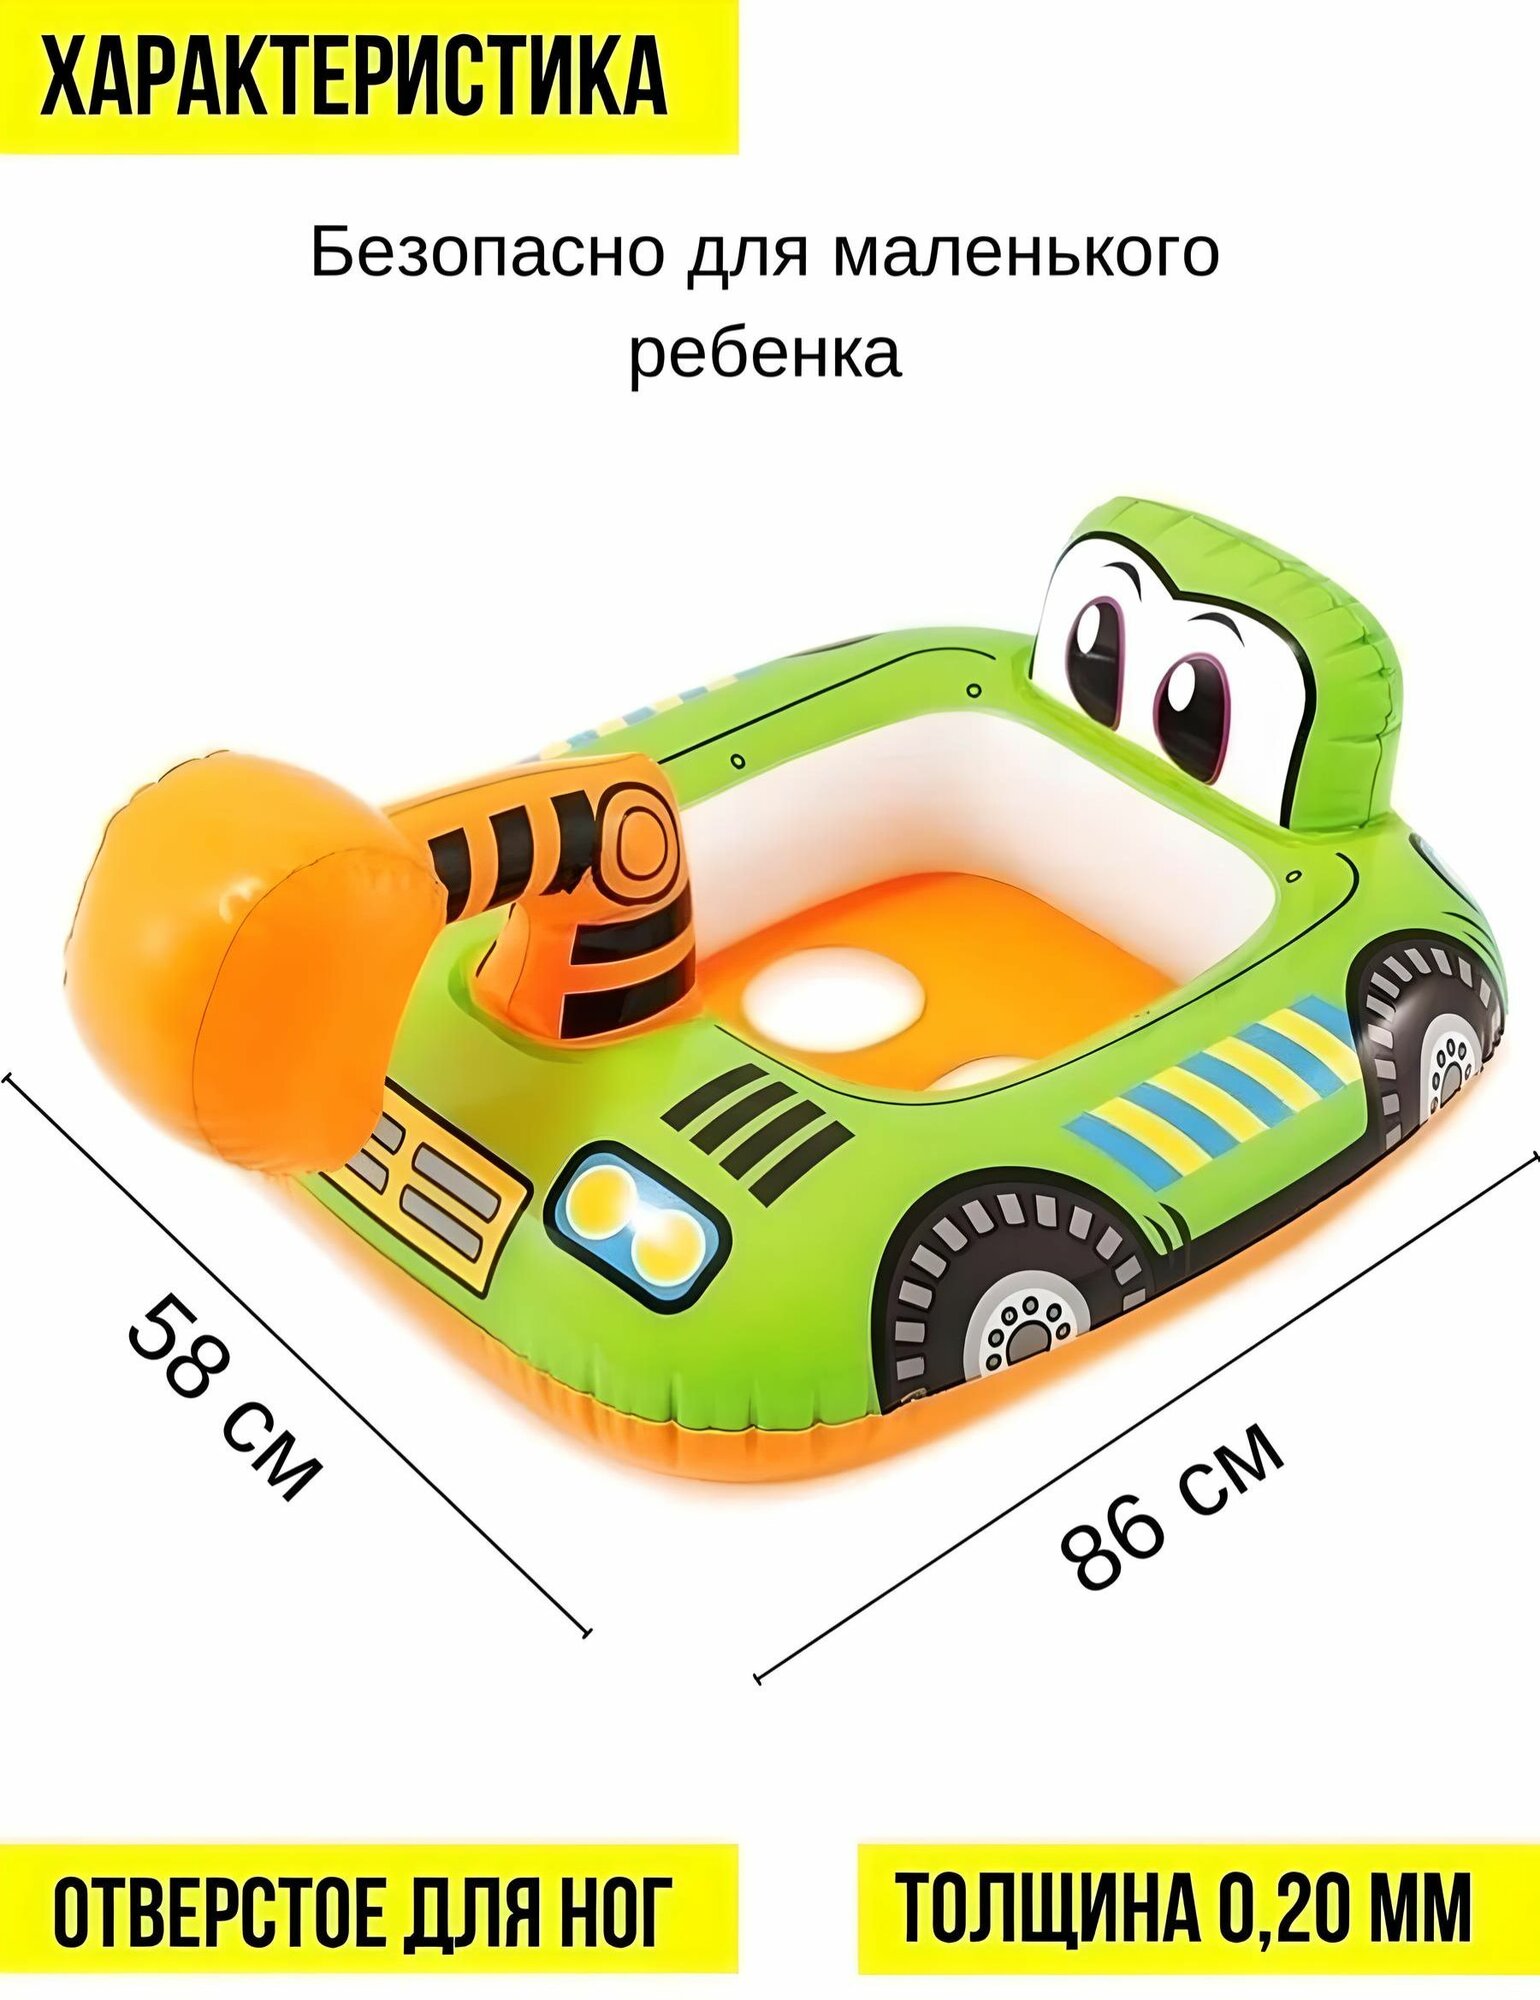 Круг для плавания детский с ножками Машинка Веселый Экскаватор, 74х58 см